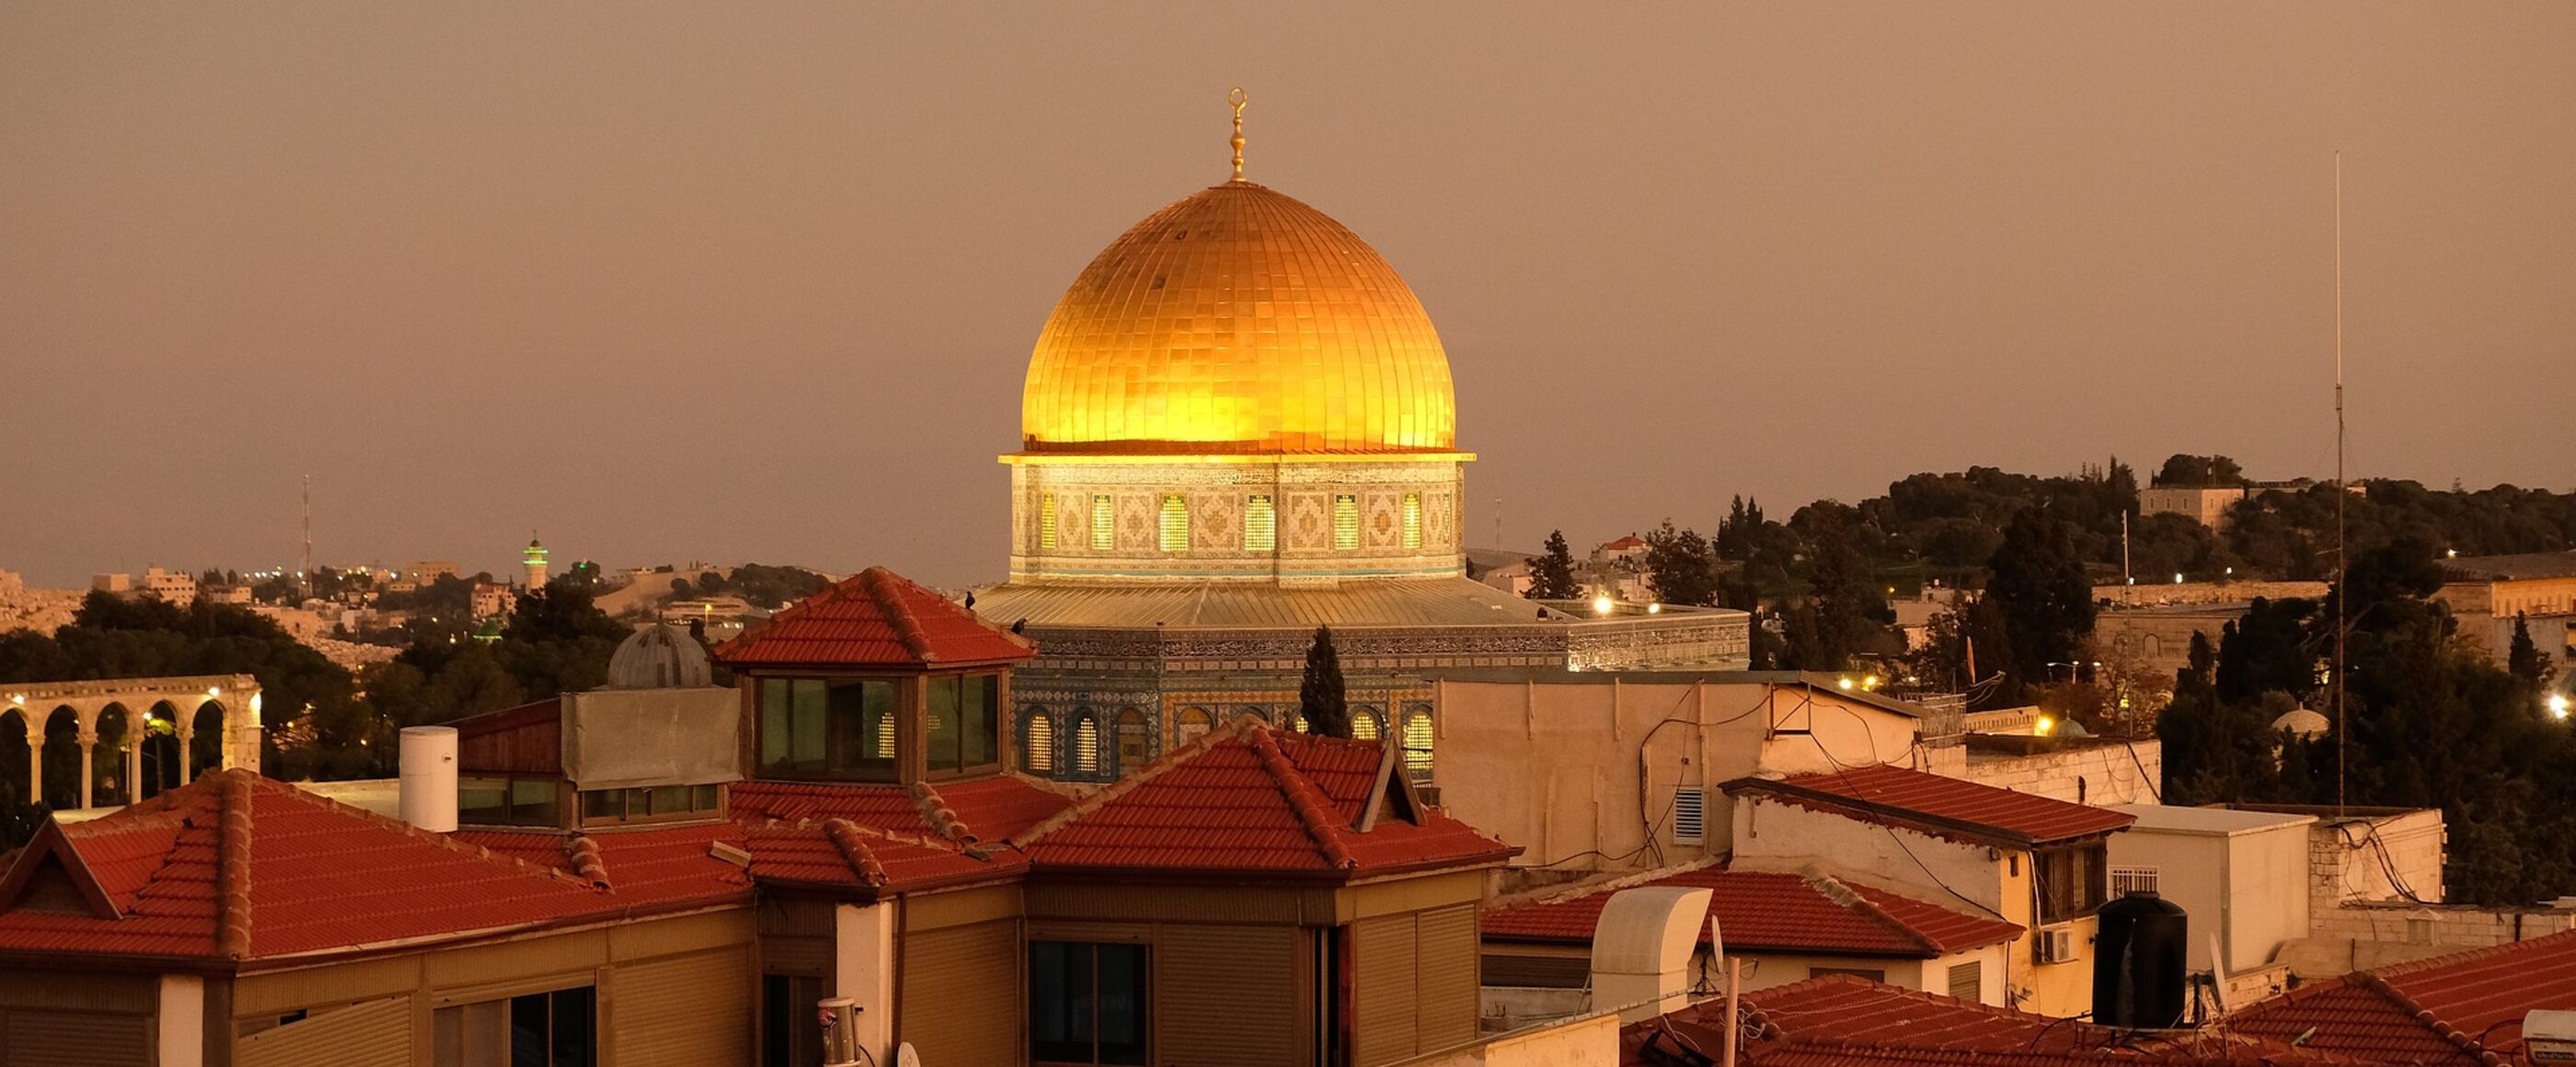 Die goldene Kuppel des Felsendoms ist zu sehen, umgeben von der Stadt Jerusalem. Das Dach des Felsendoms schimmert golden im Sonnenuntergang.